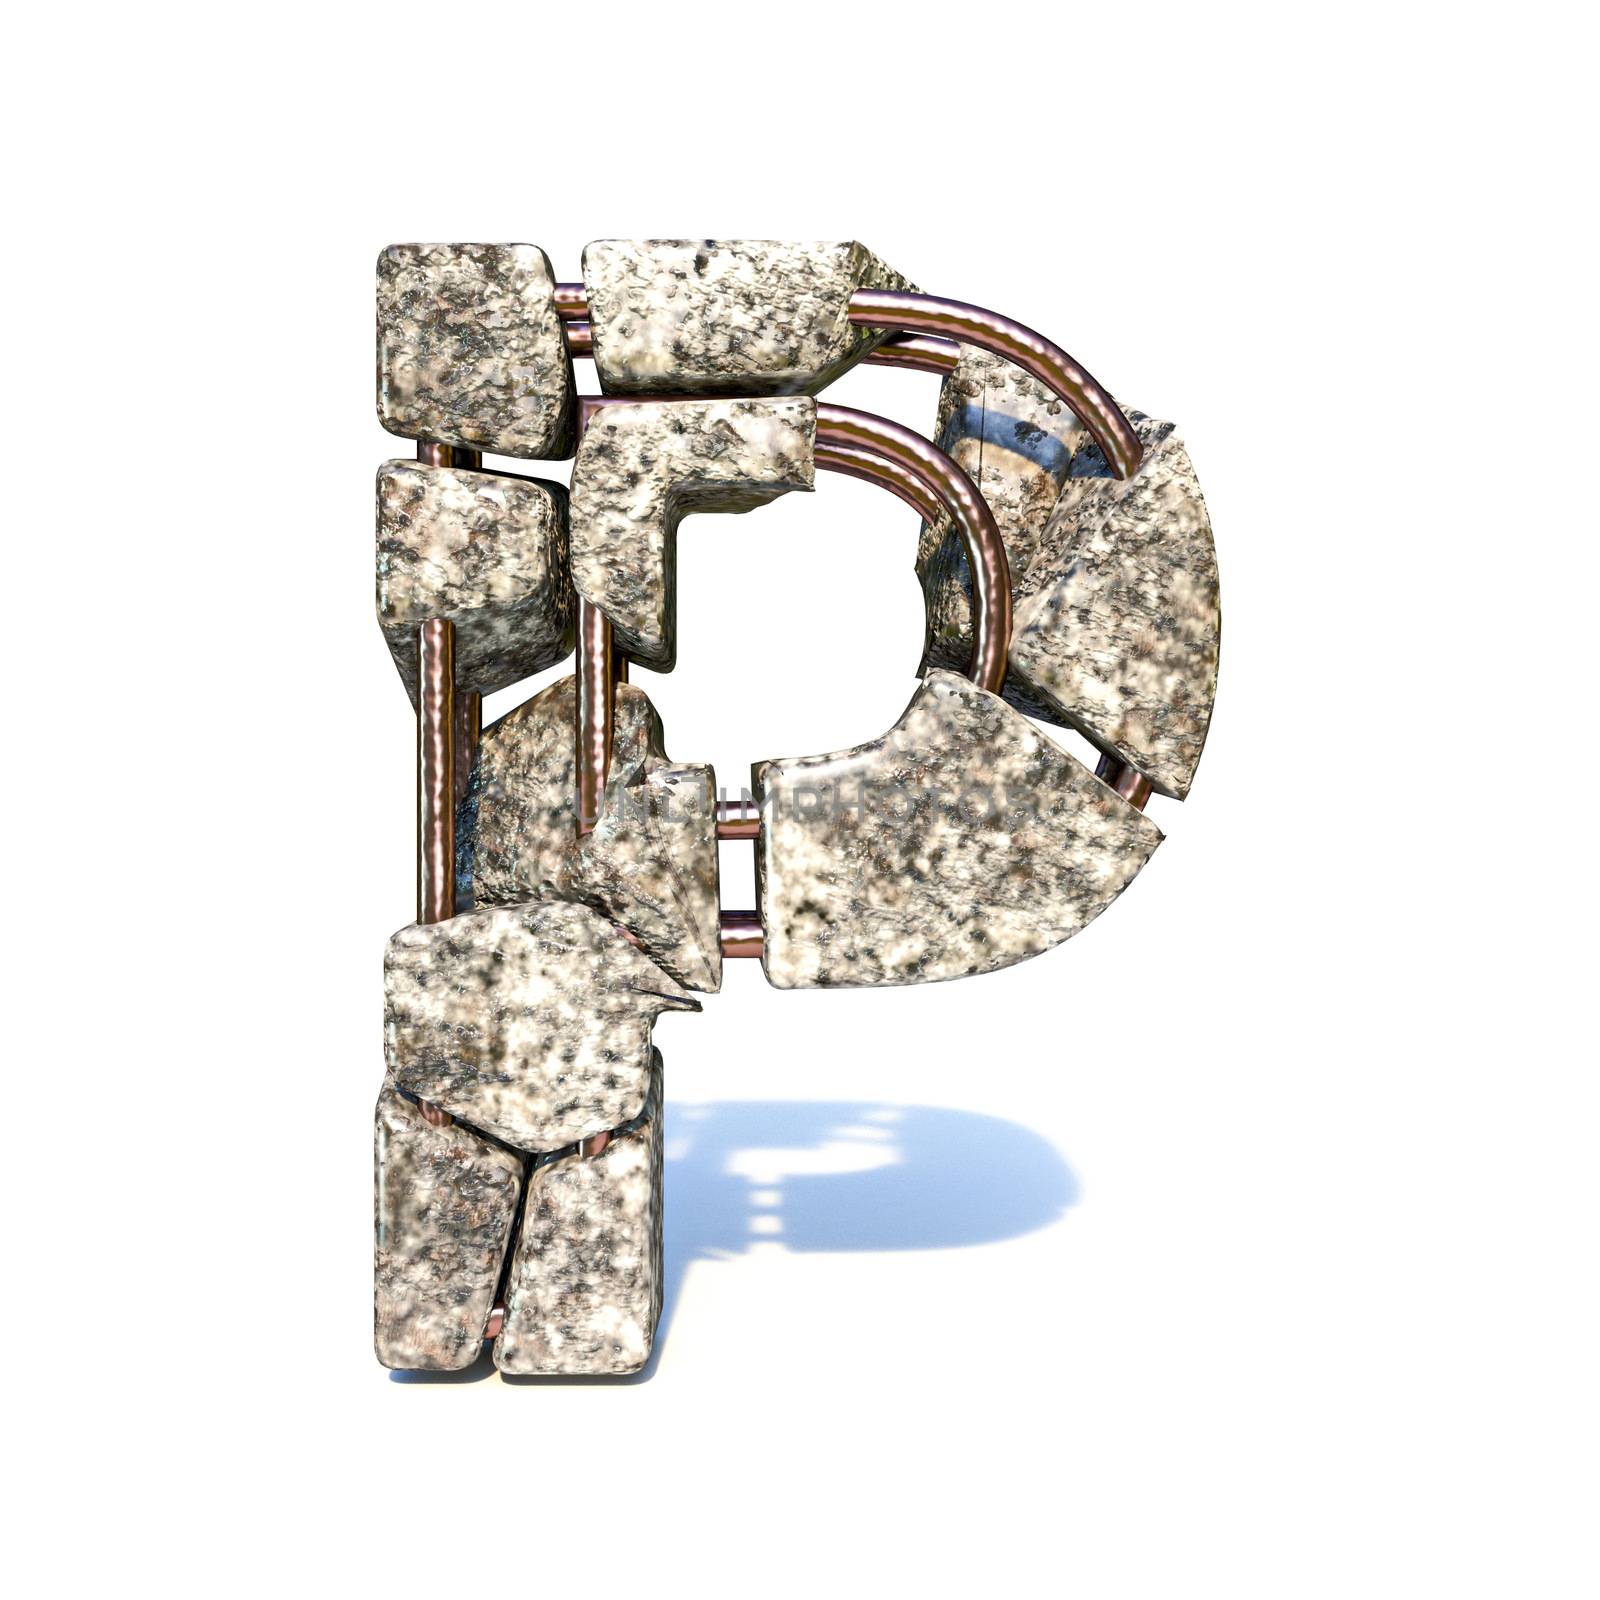 Concrete fracture font Letter P 3D by djmilic